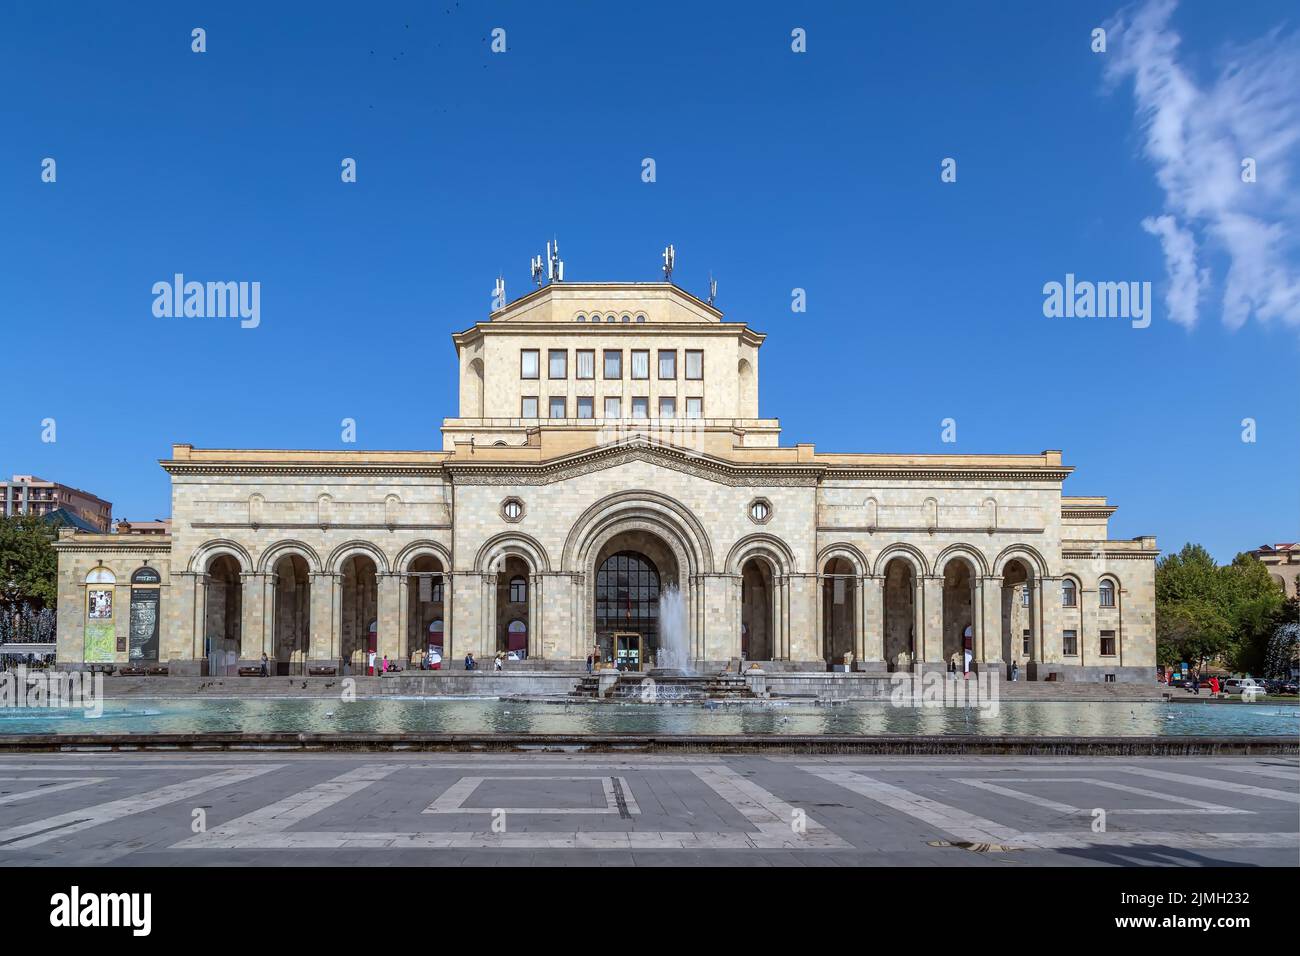 History Museum of Armenia, Yerevan, Armenia Stock Photo